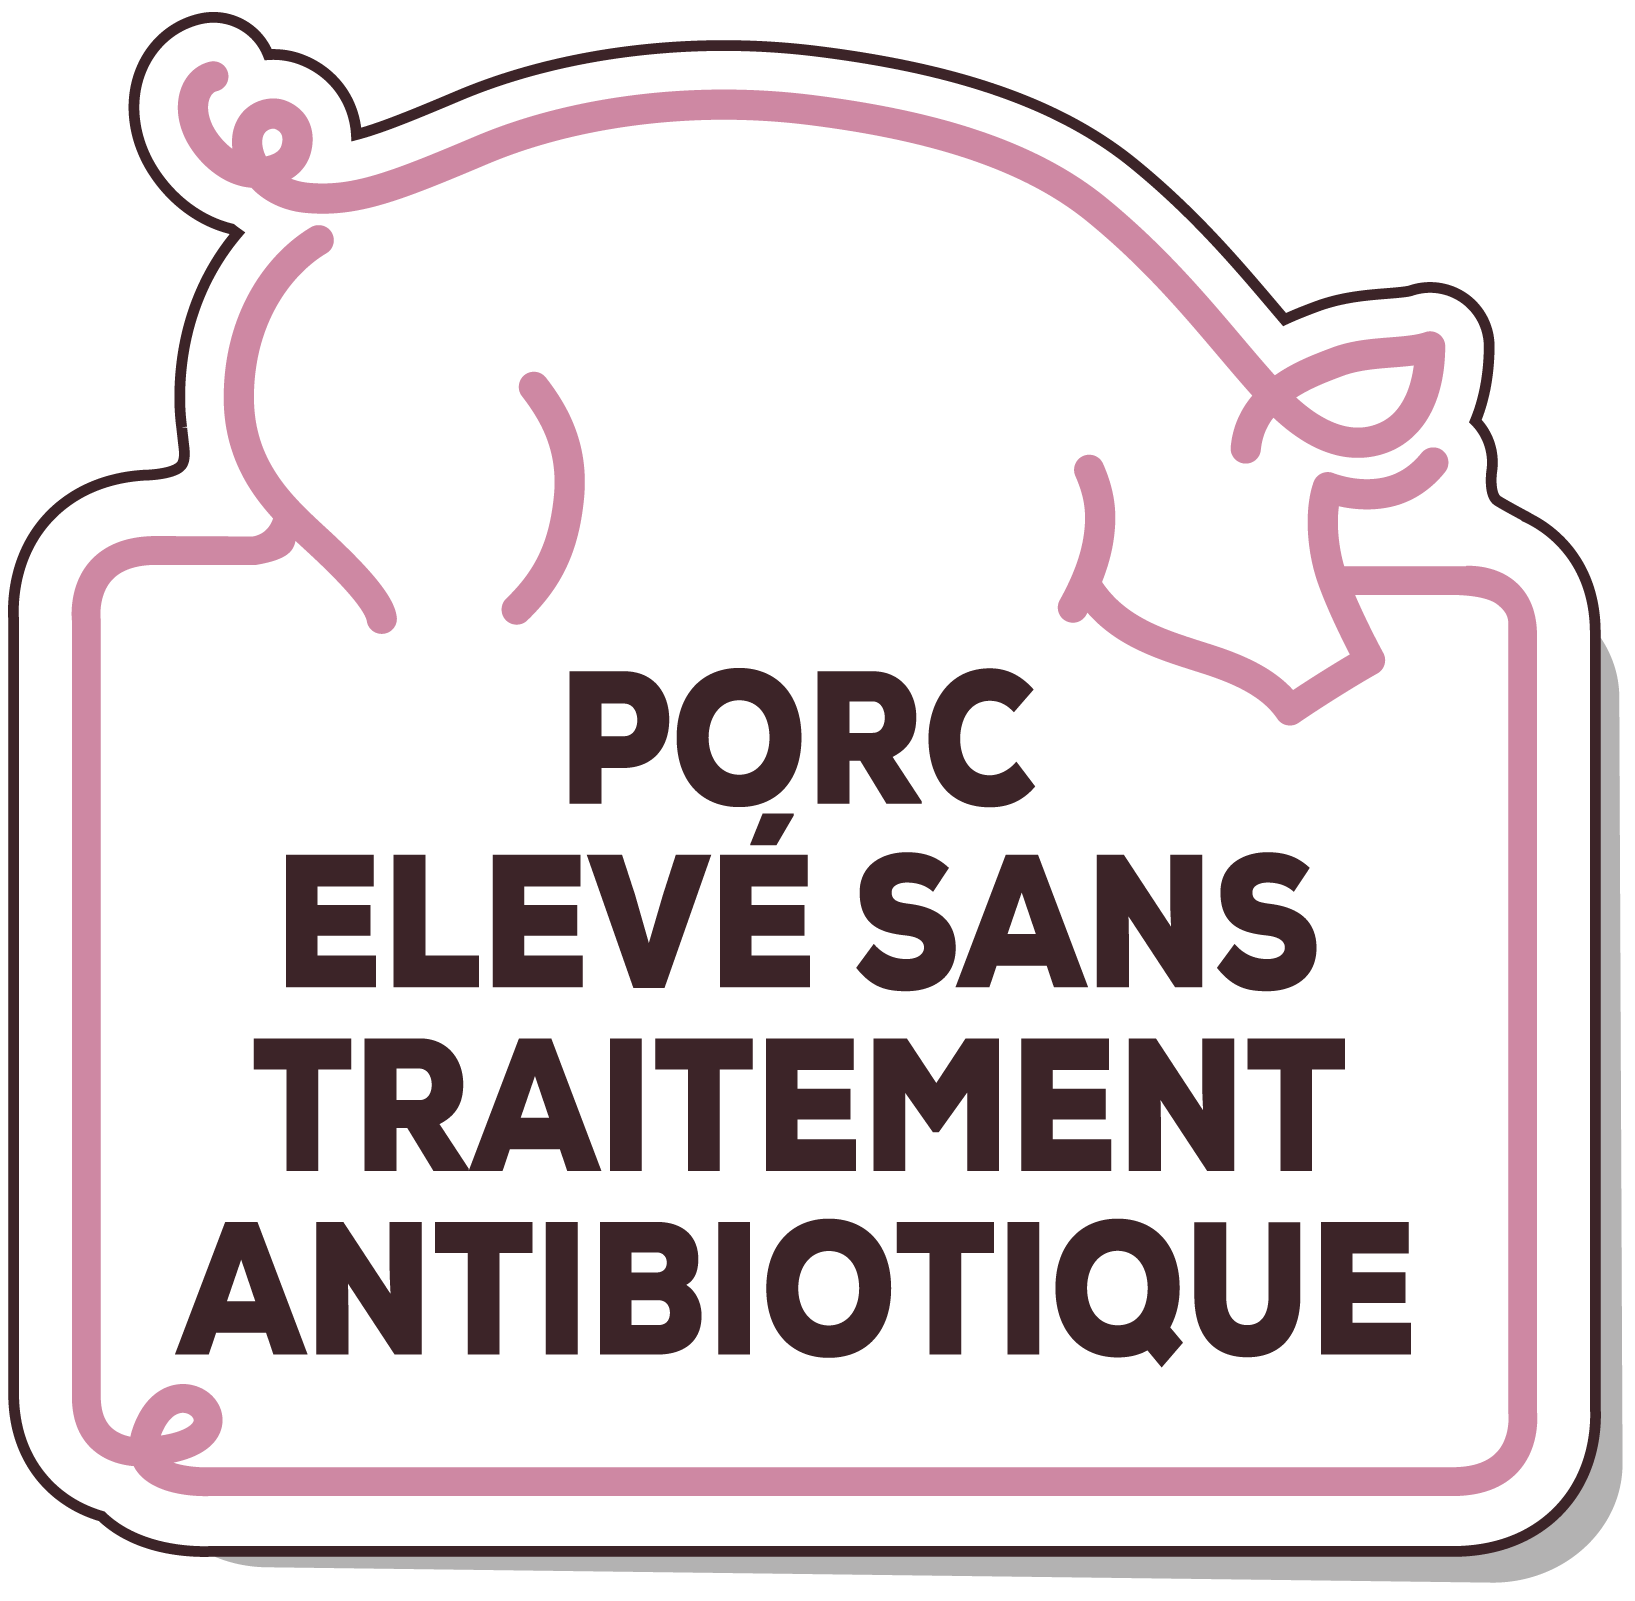 Porc élevé sans traitement antibiotique